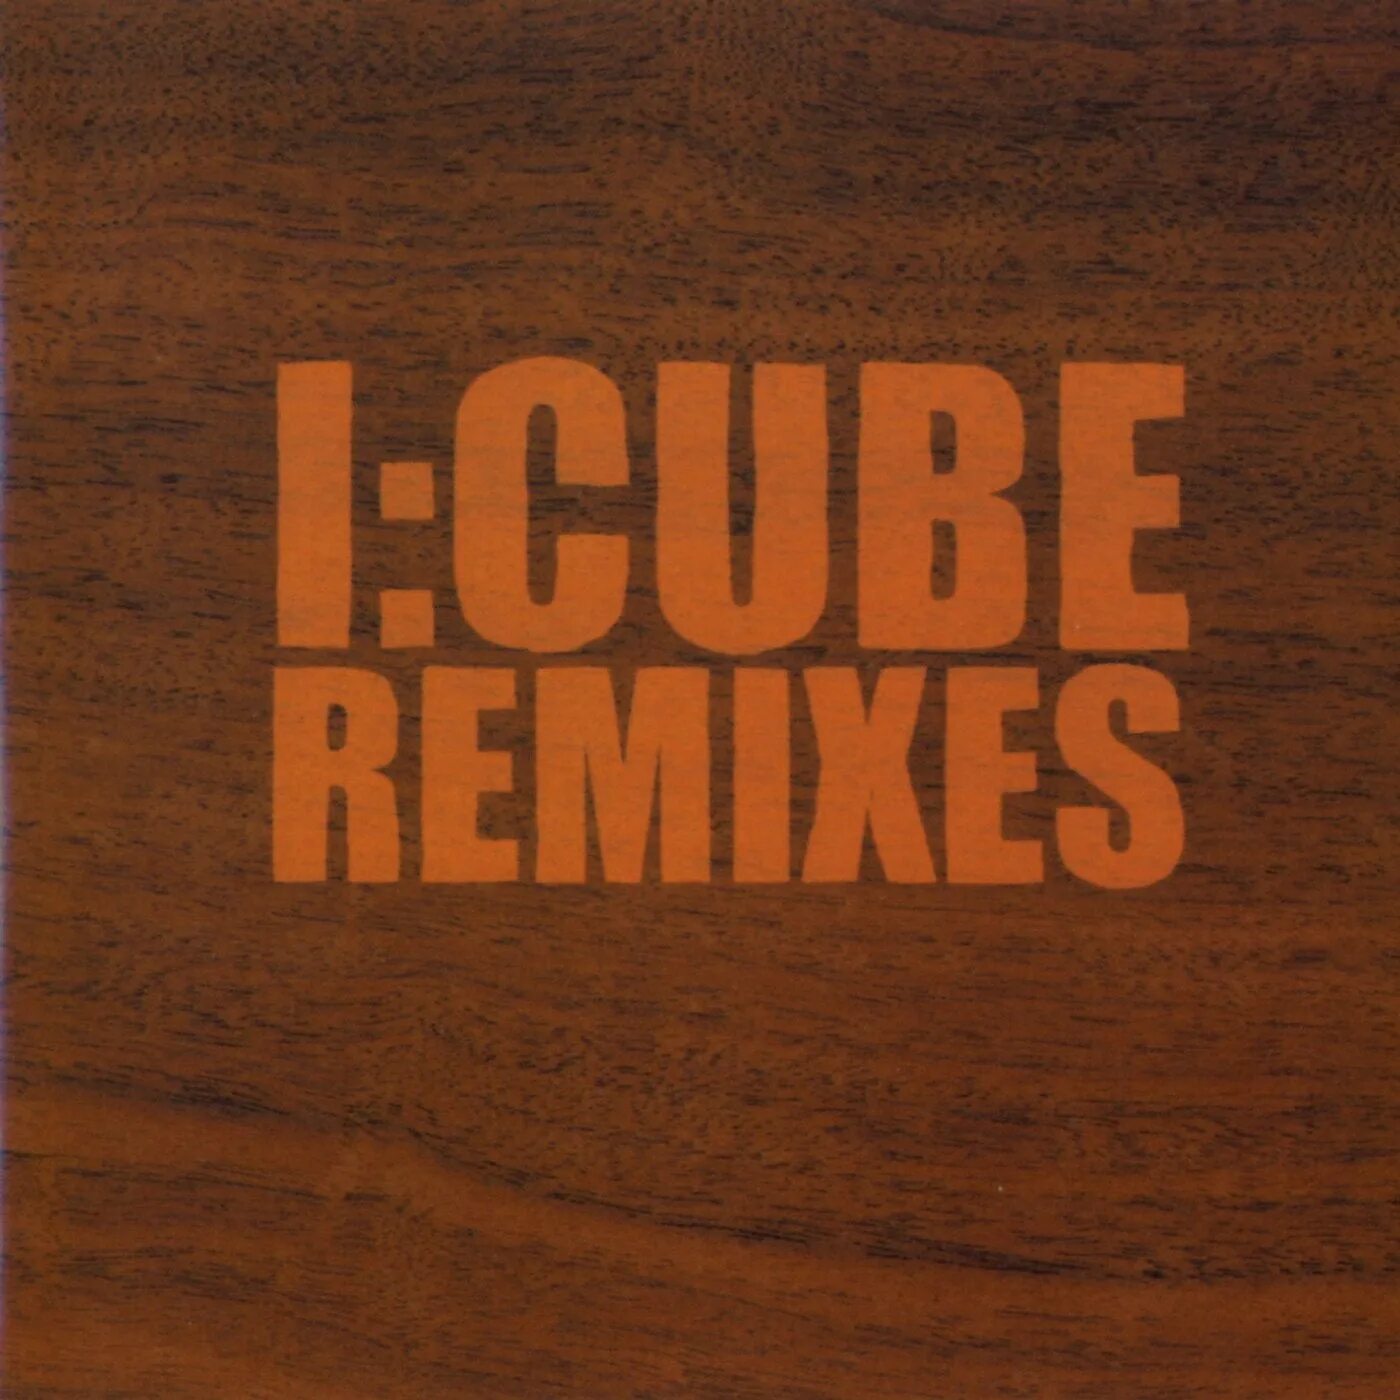 Cube remix. I Cube.